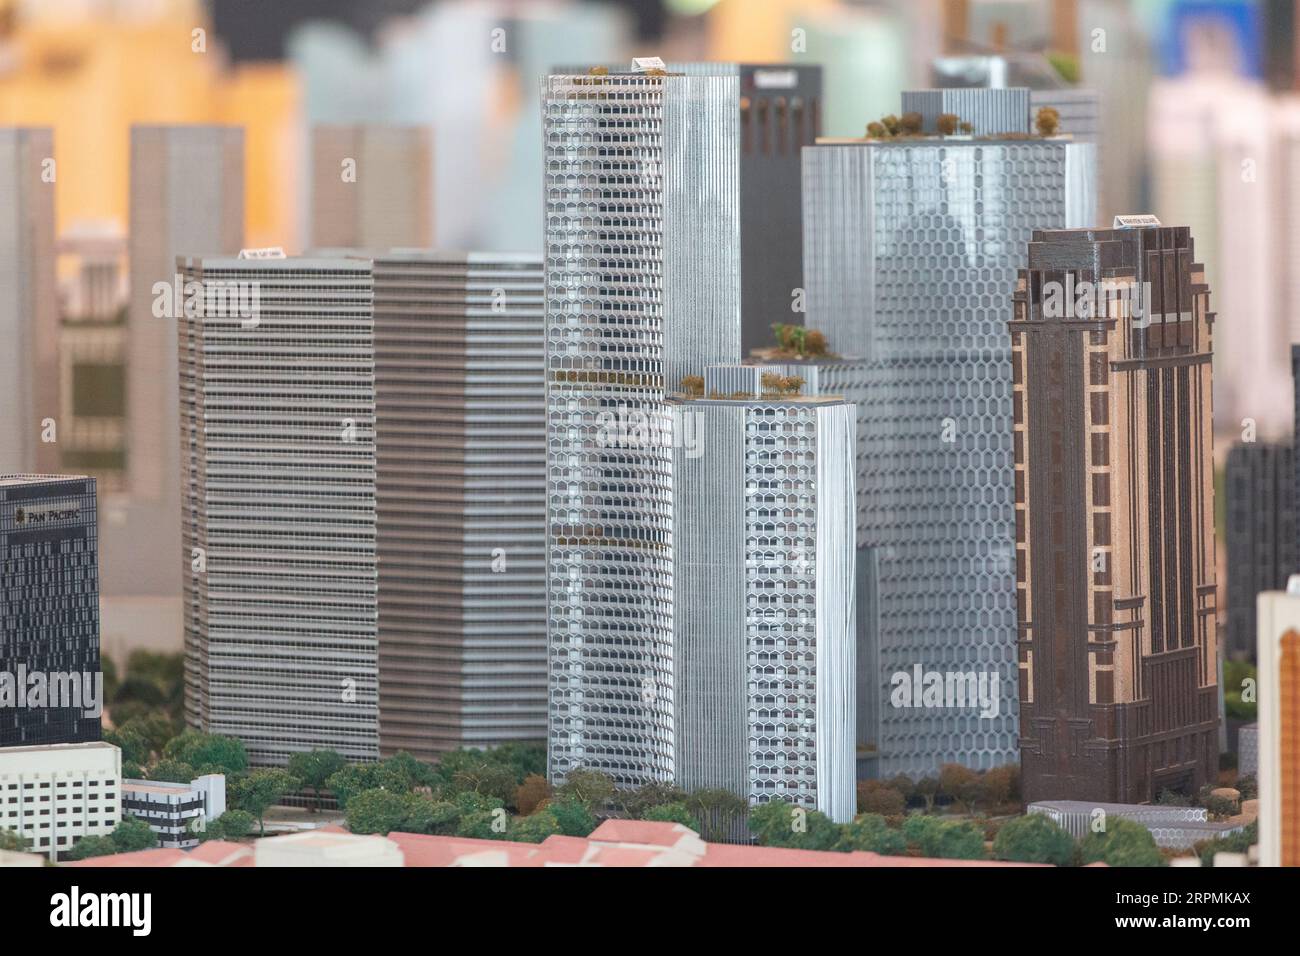 3D-Sandmodell von Architekturgebäuden wie DUO, The Gateway, Parkview Square usw., ein Blick auf den Verlauf der Stadtplanung in Singapur. Stockfoto